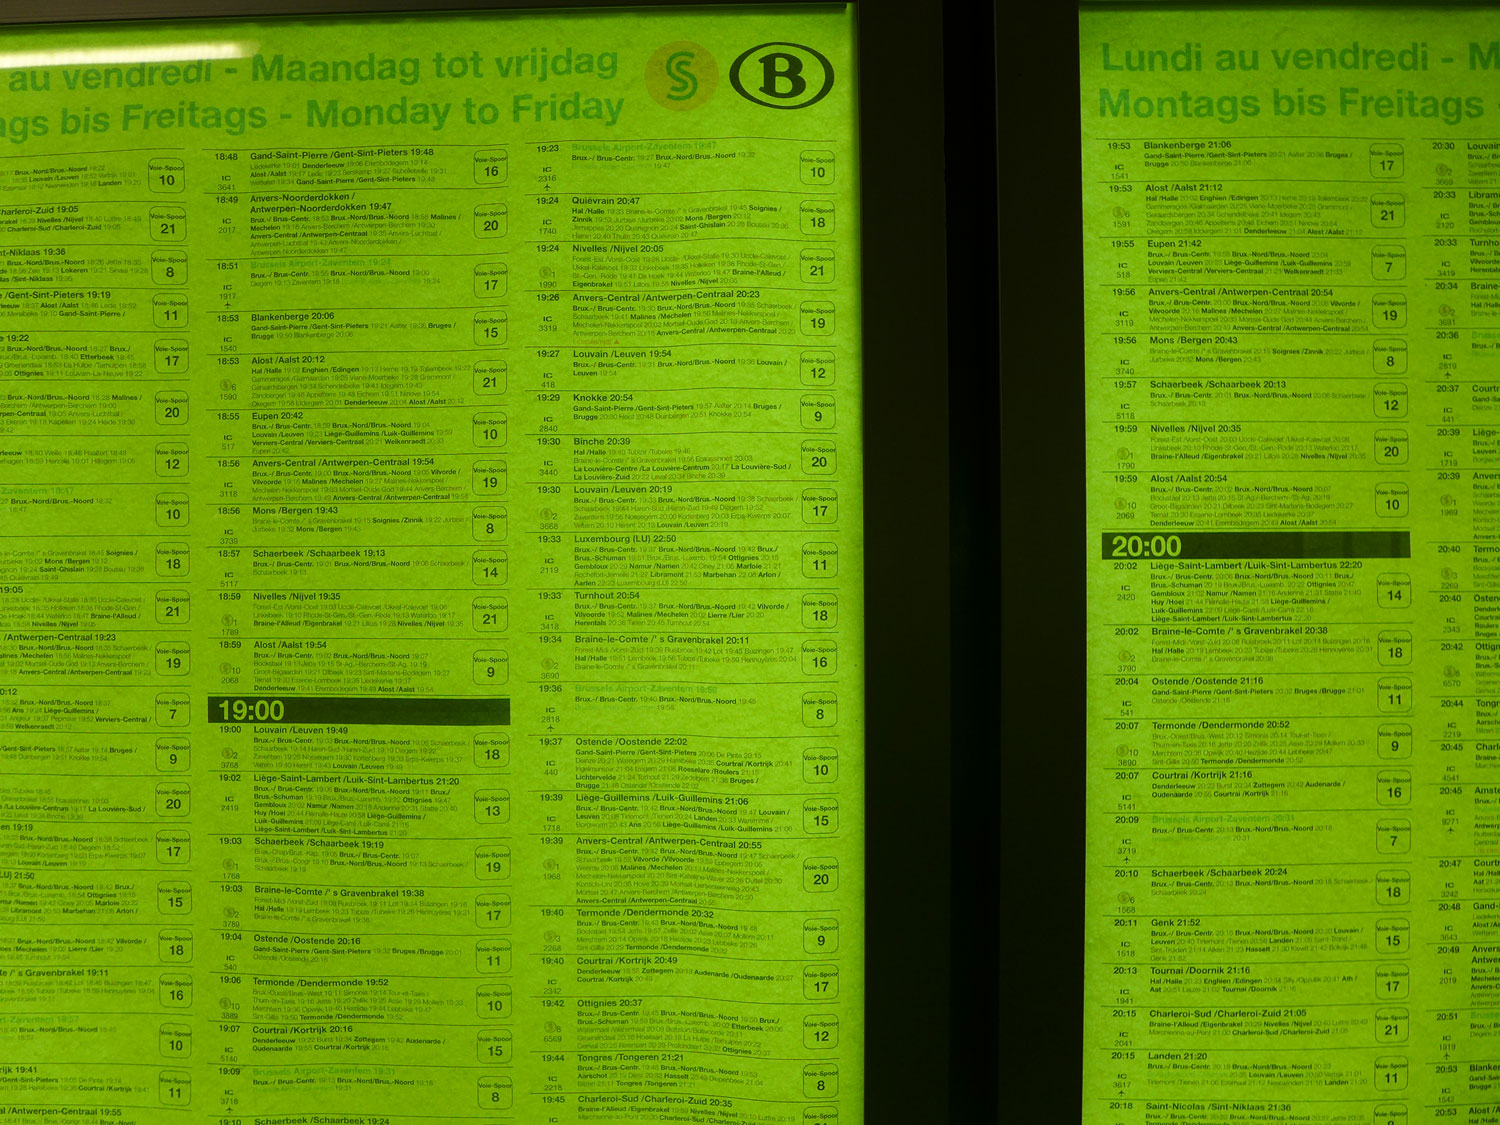 Les horaires de train, comme beaucoup d’informations en Belgique, sont en plusieurs langues : français, anglais, néerlandais et allemand © Globe Reporters